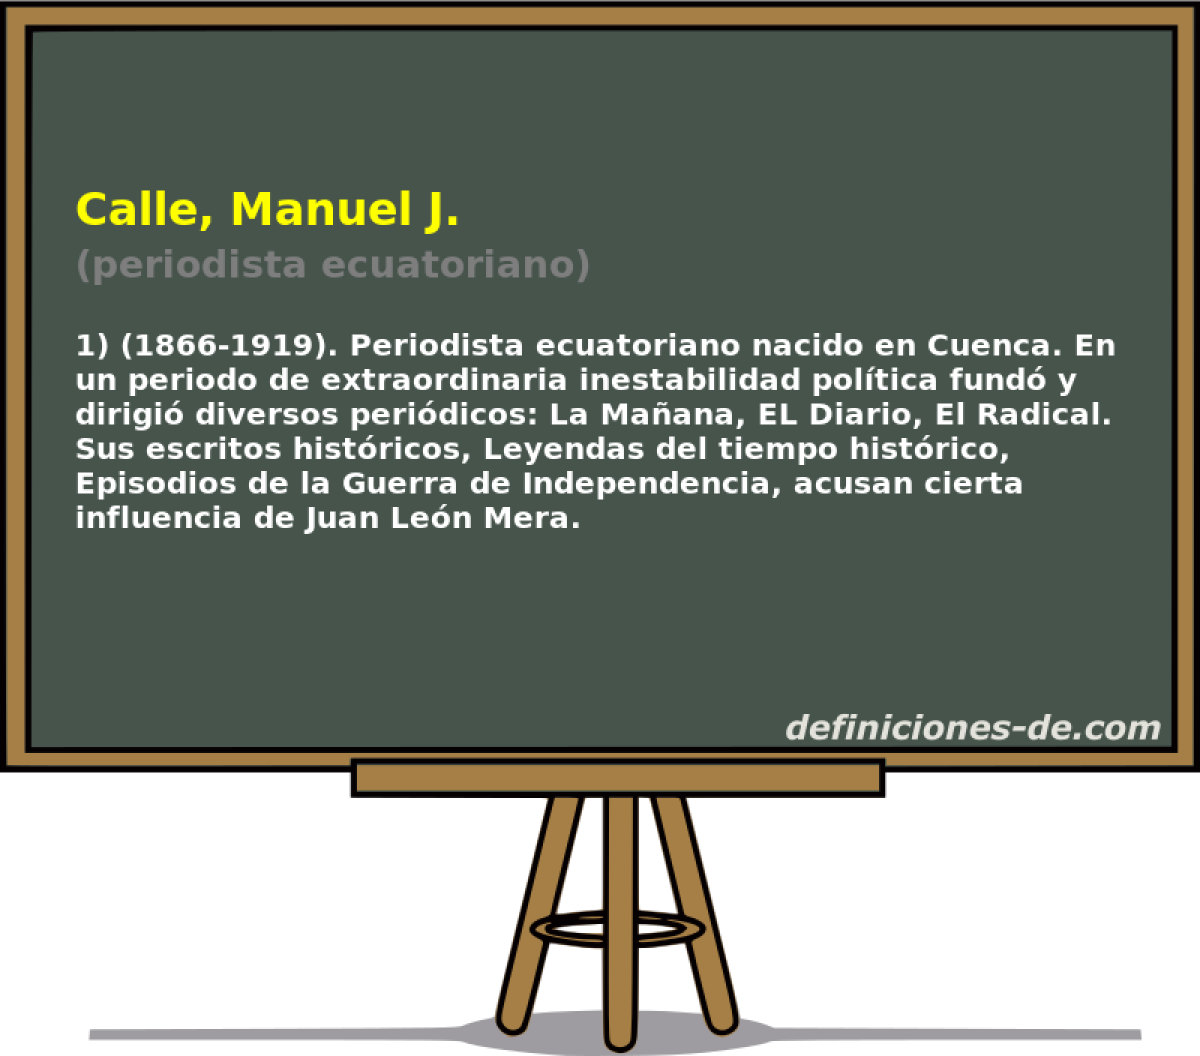 Calle, Manuel J. (periodista ecuatoriano)